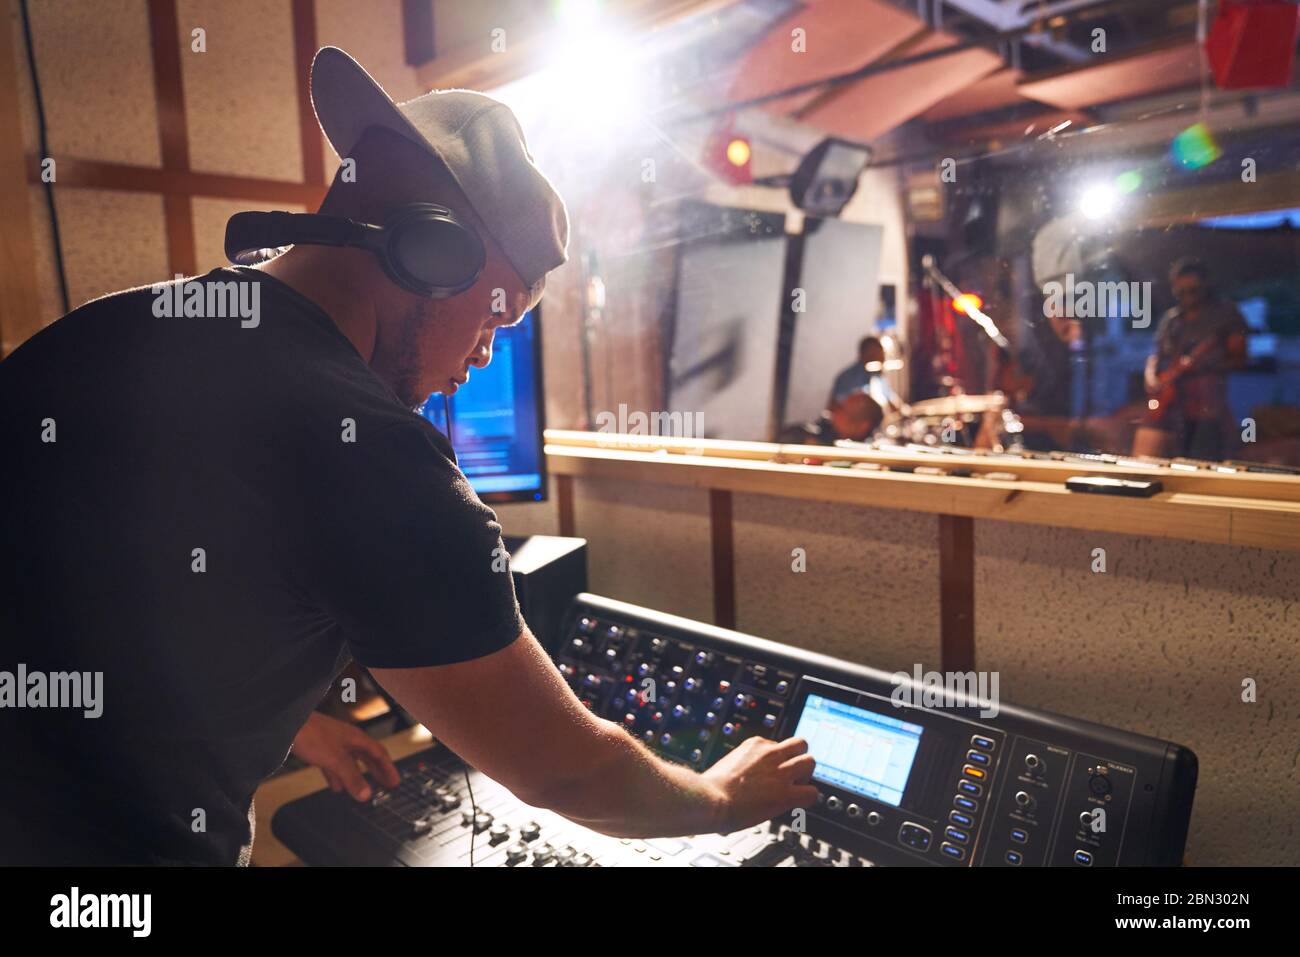 Homme travaillant à la carte son dans un studio d'enregistrement de musique Banque D'Images